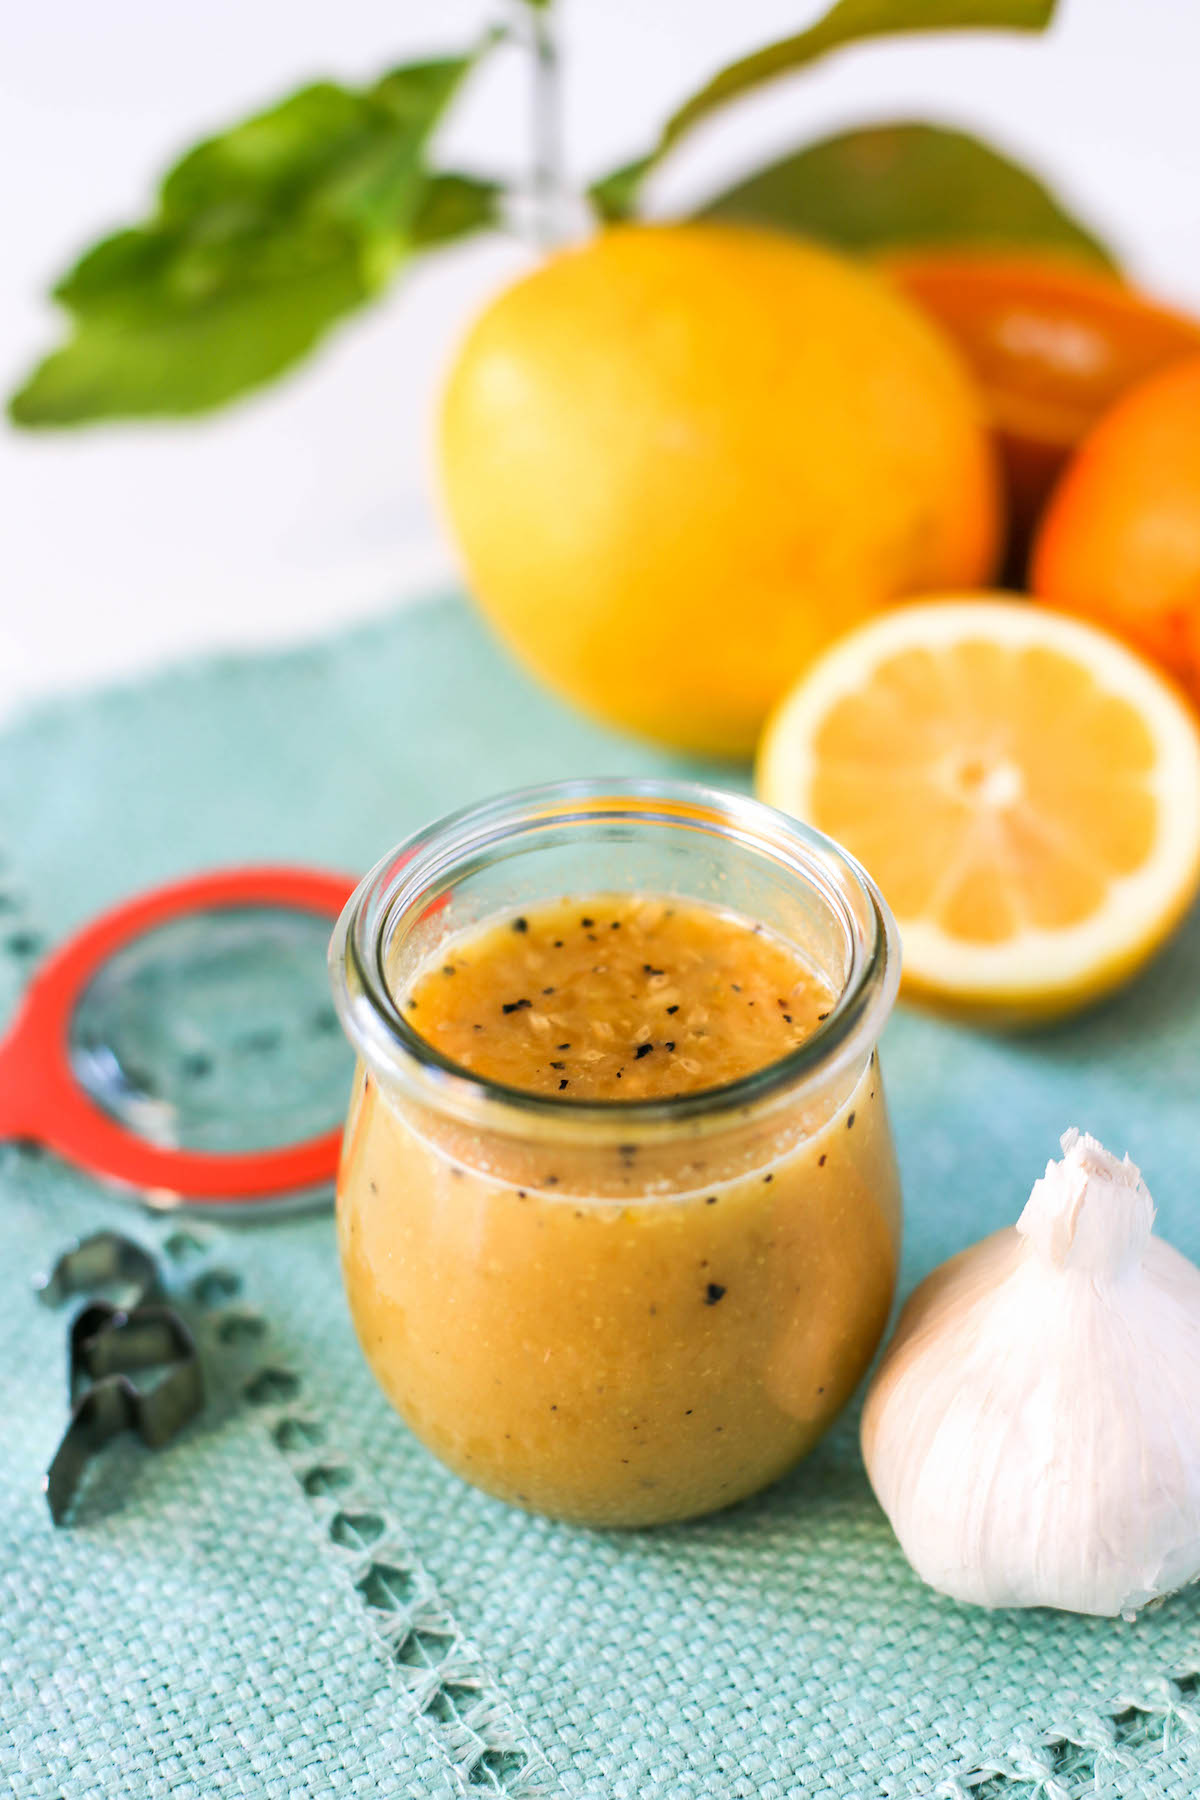 Citrus vinaigrette in a jar atop a blue placemat with lemons, oranges, a head of garlic surrounding it